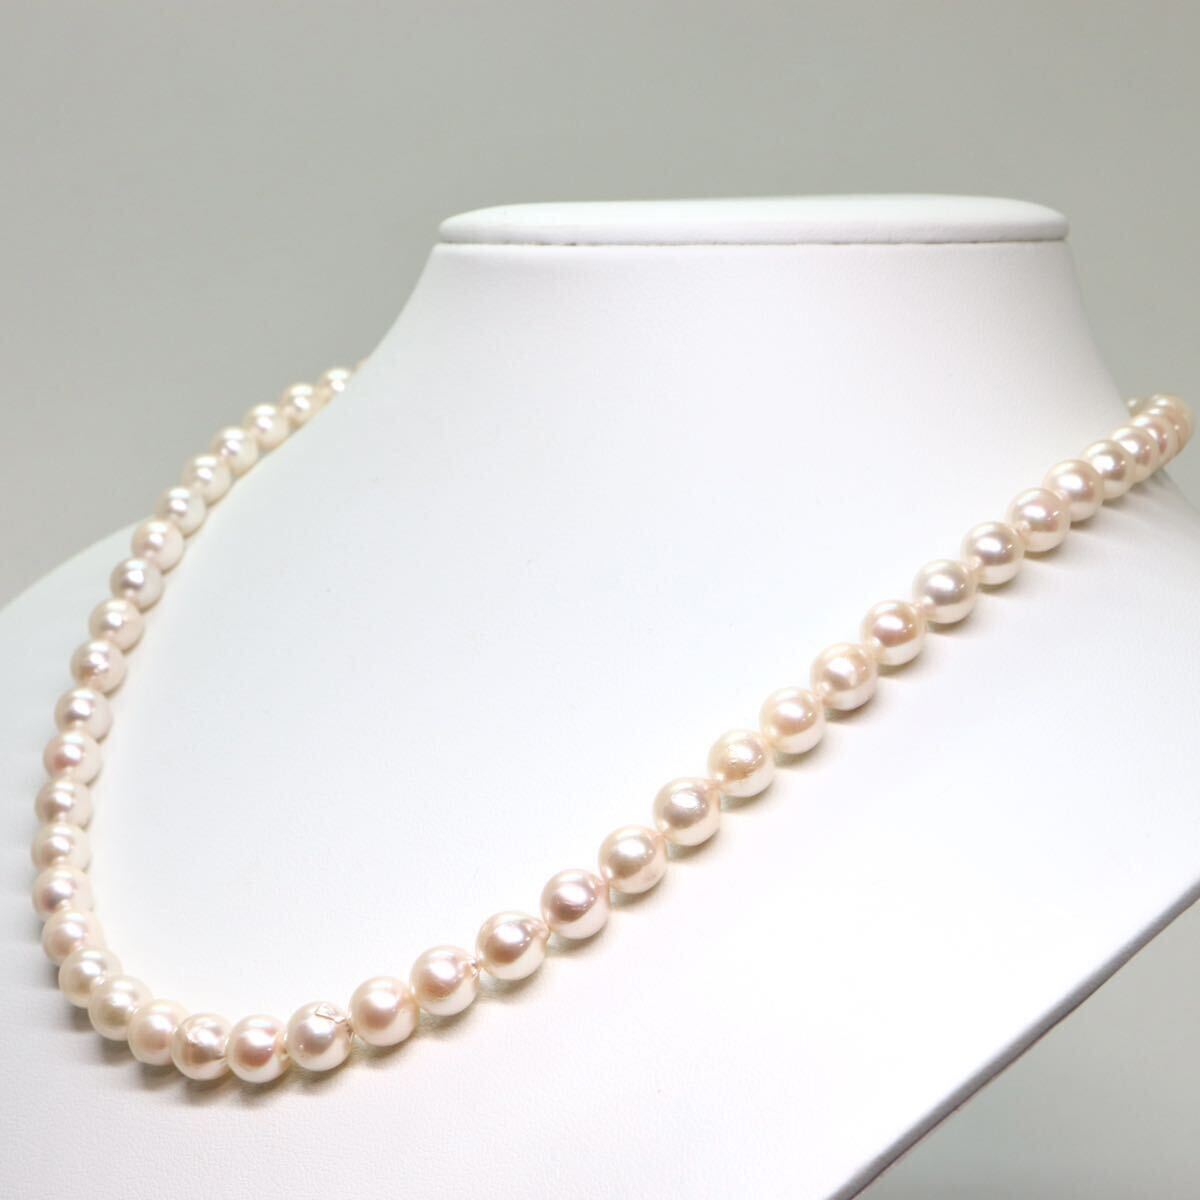 ソーティング付き!!《アコヤ本真珠ネックレス》M 約7.0-7.5mm珠 34.8g 約48.5cm pearl necklace ジュエリー jewelry DE0/DE0